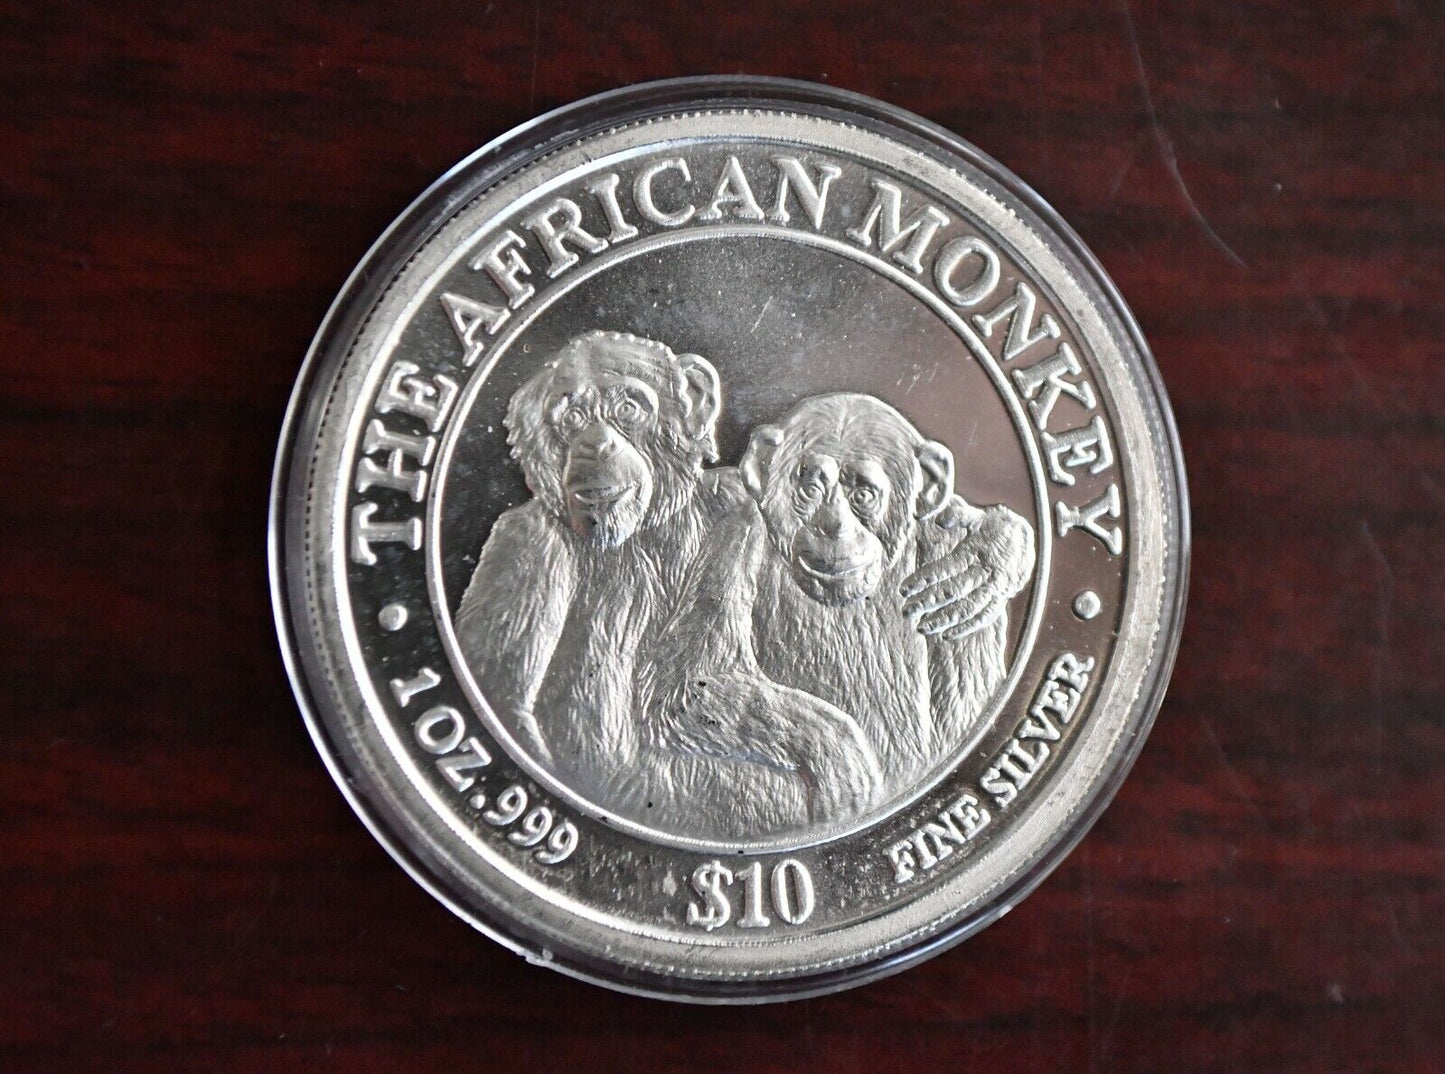 2000 The African Monkey .999 Fine Silver Somali Republic 1 oz. Rare $10